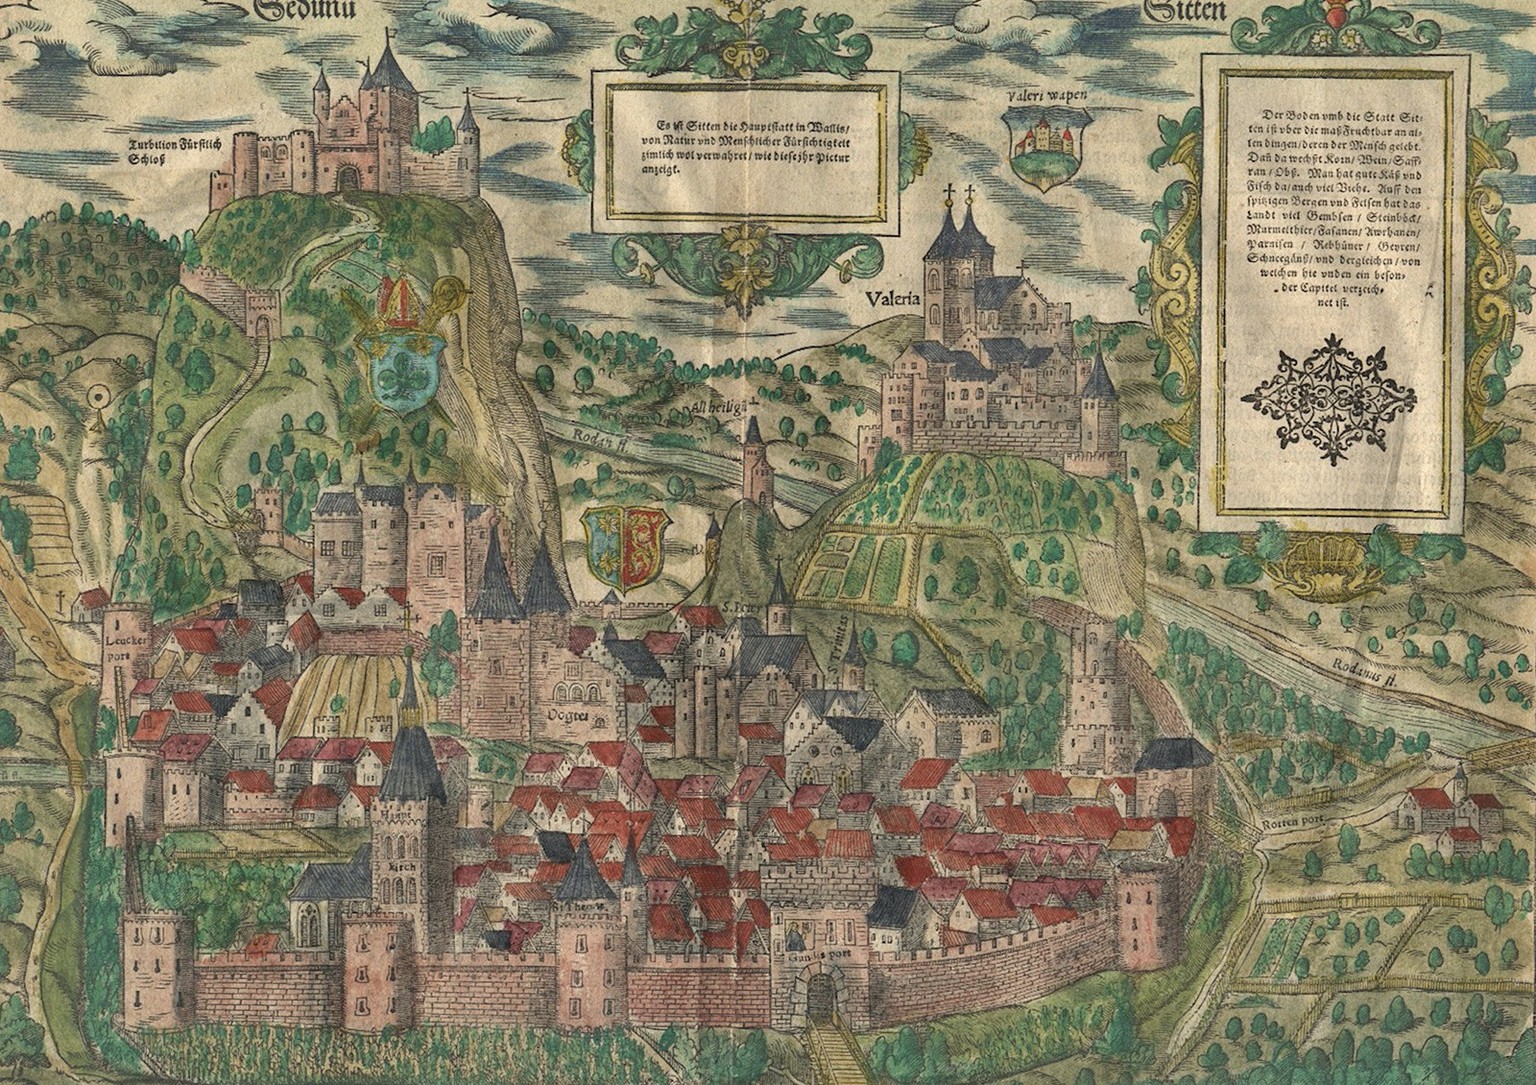 Sitten um 1588. Panorama in der Cosmographia von Sebastian Münster.
https://notrehistoire.ch/entries/aZnYJLM38ok